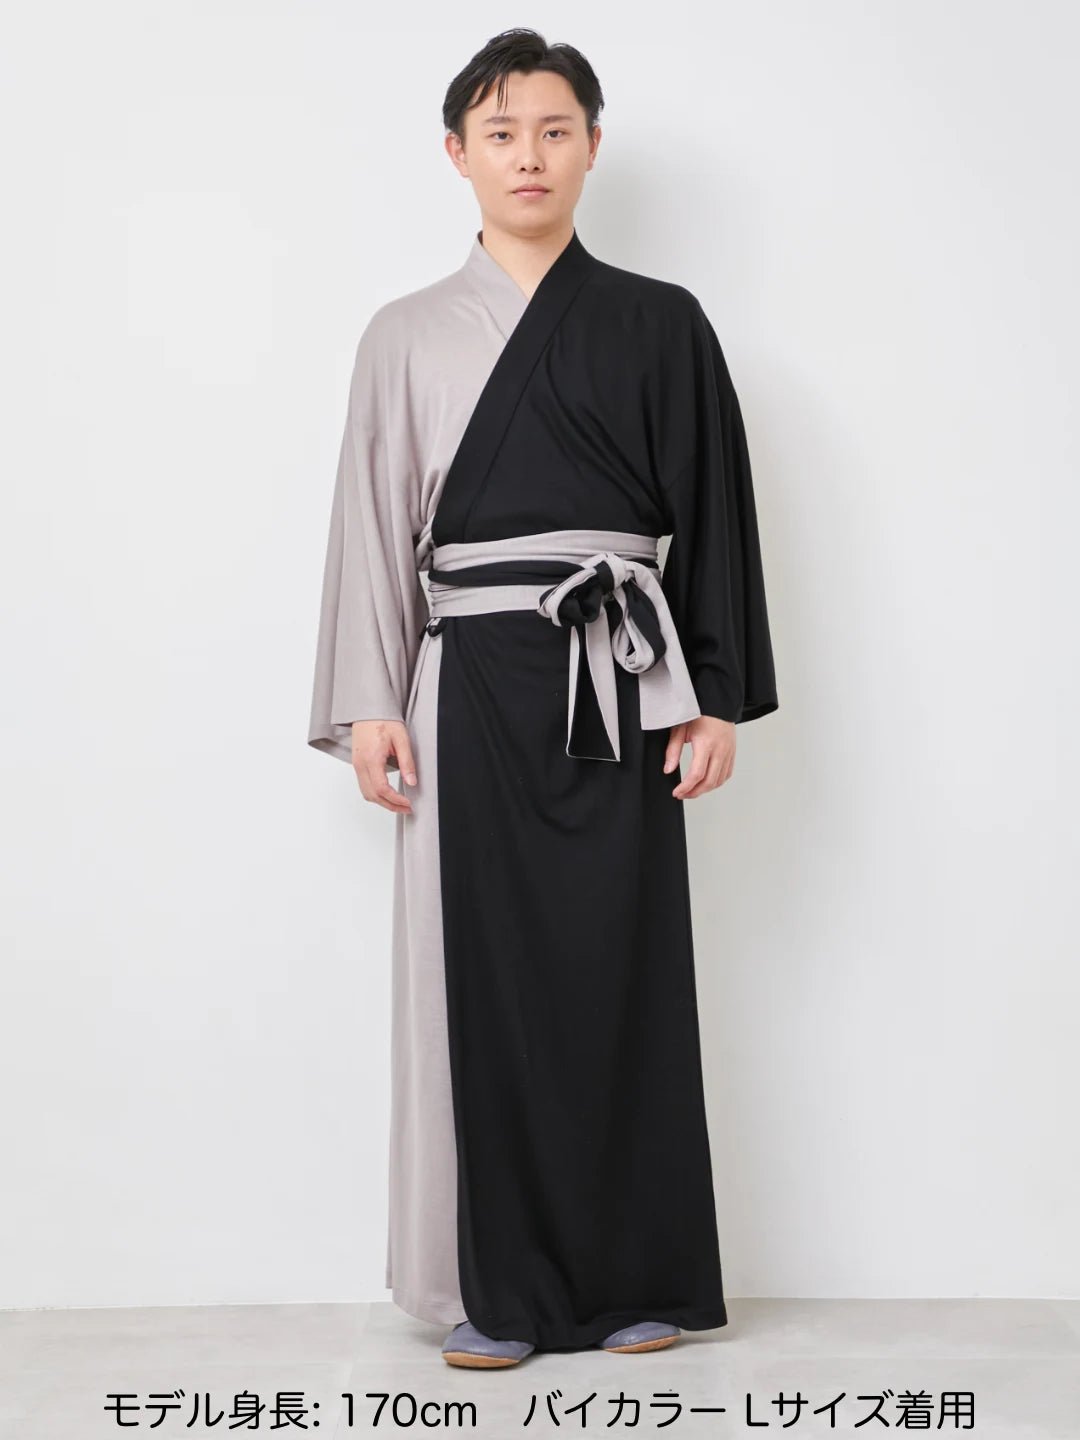 
                  
                    【予約販売】浴衣ルームウェア・プレミアム・バイカラー -グレー/ブラック- Yukata Roomwear Premium Bicolor -Grey/Black- - Nanafu｜YUKATA Roomwear
                  
                